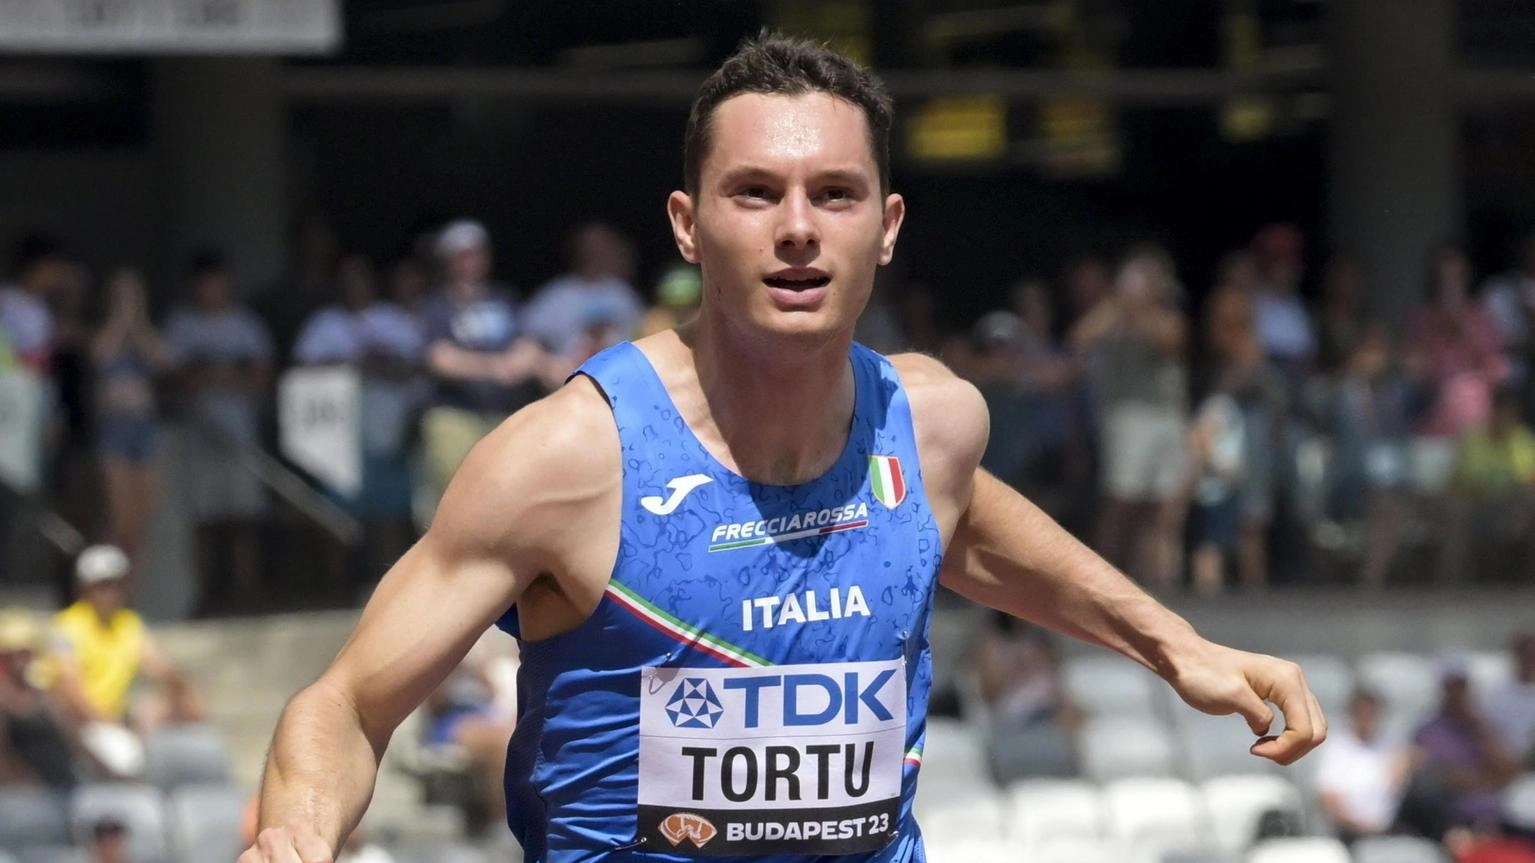 Atletica: Sprint Festival, Tortu conquista i 200 m uomini